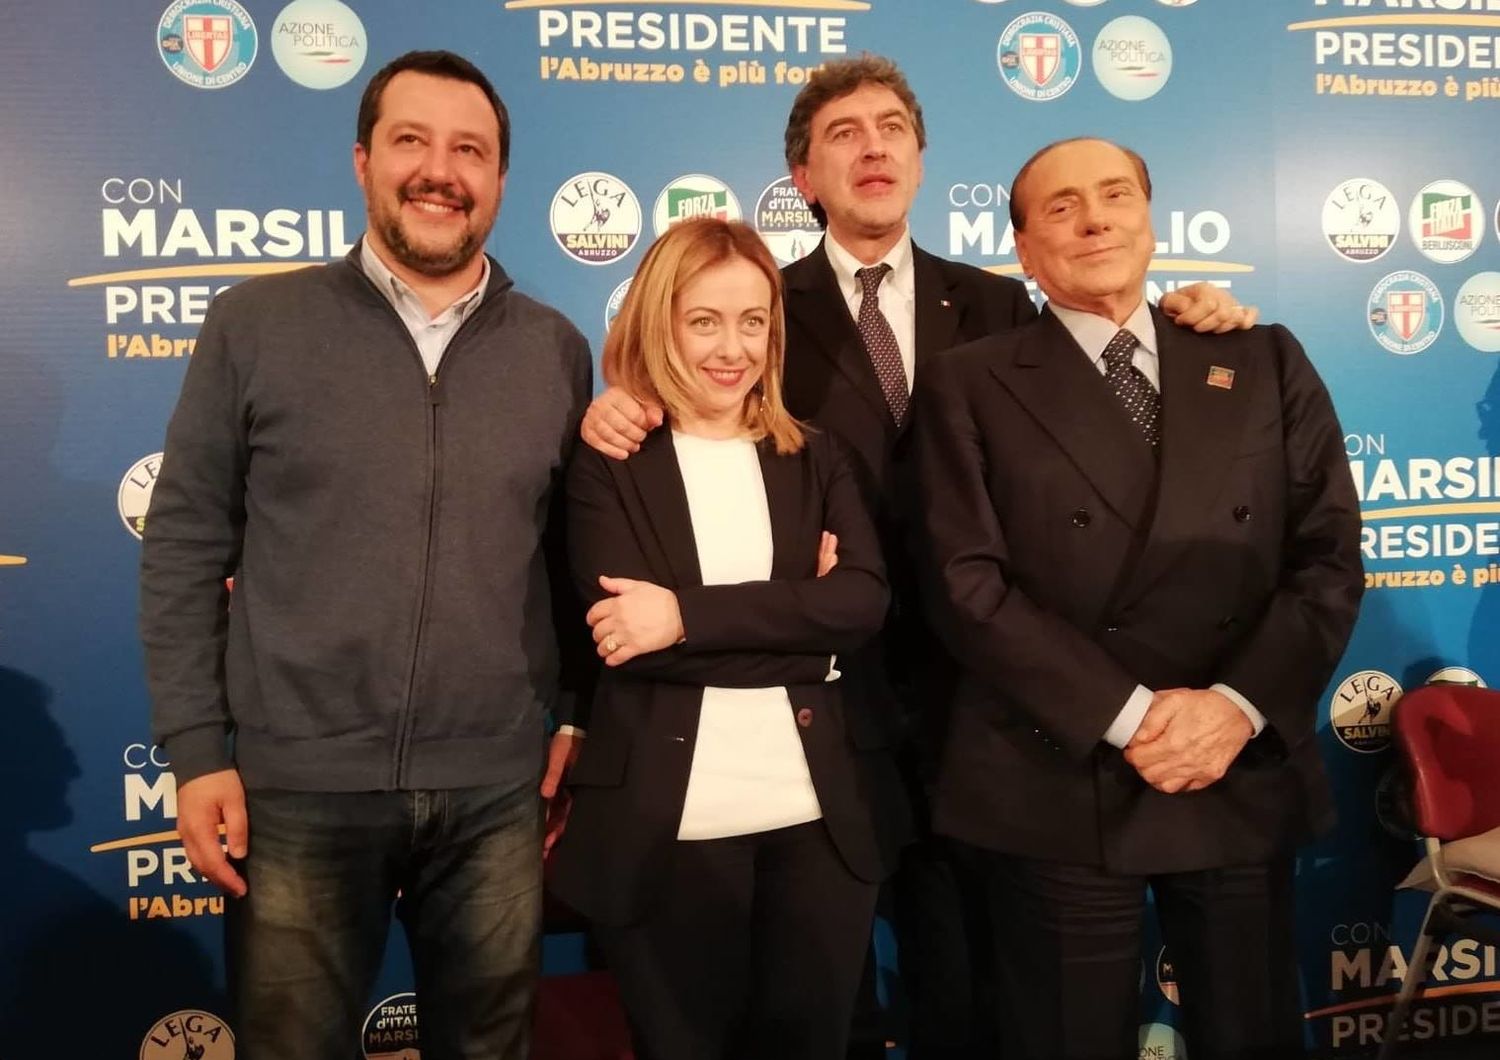 Salvini, Meloni, Marsilio e Berlusconi